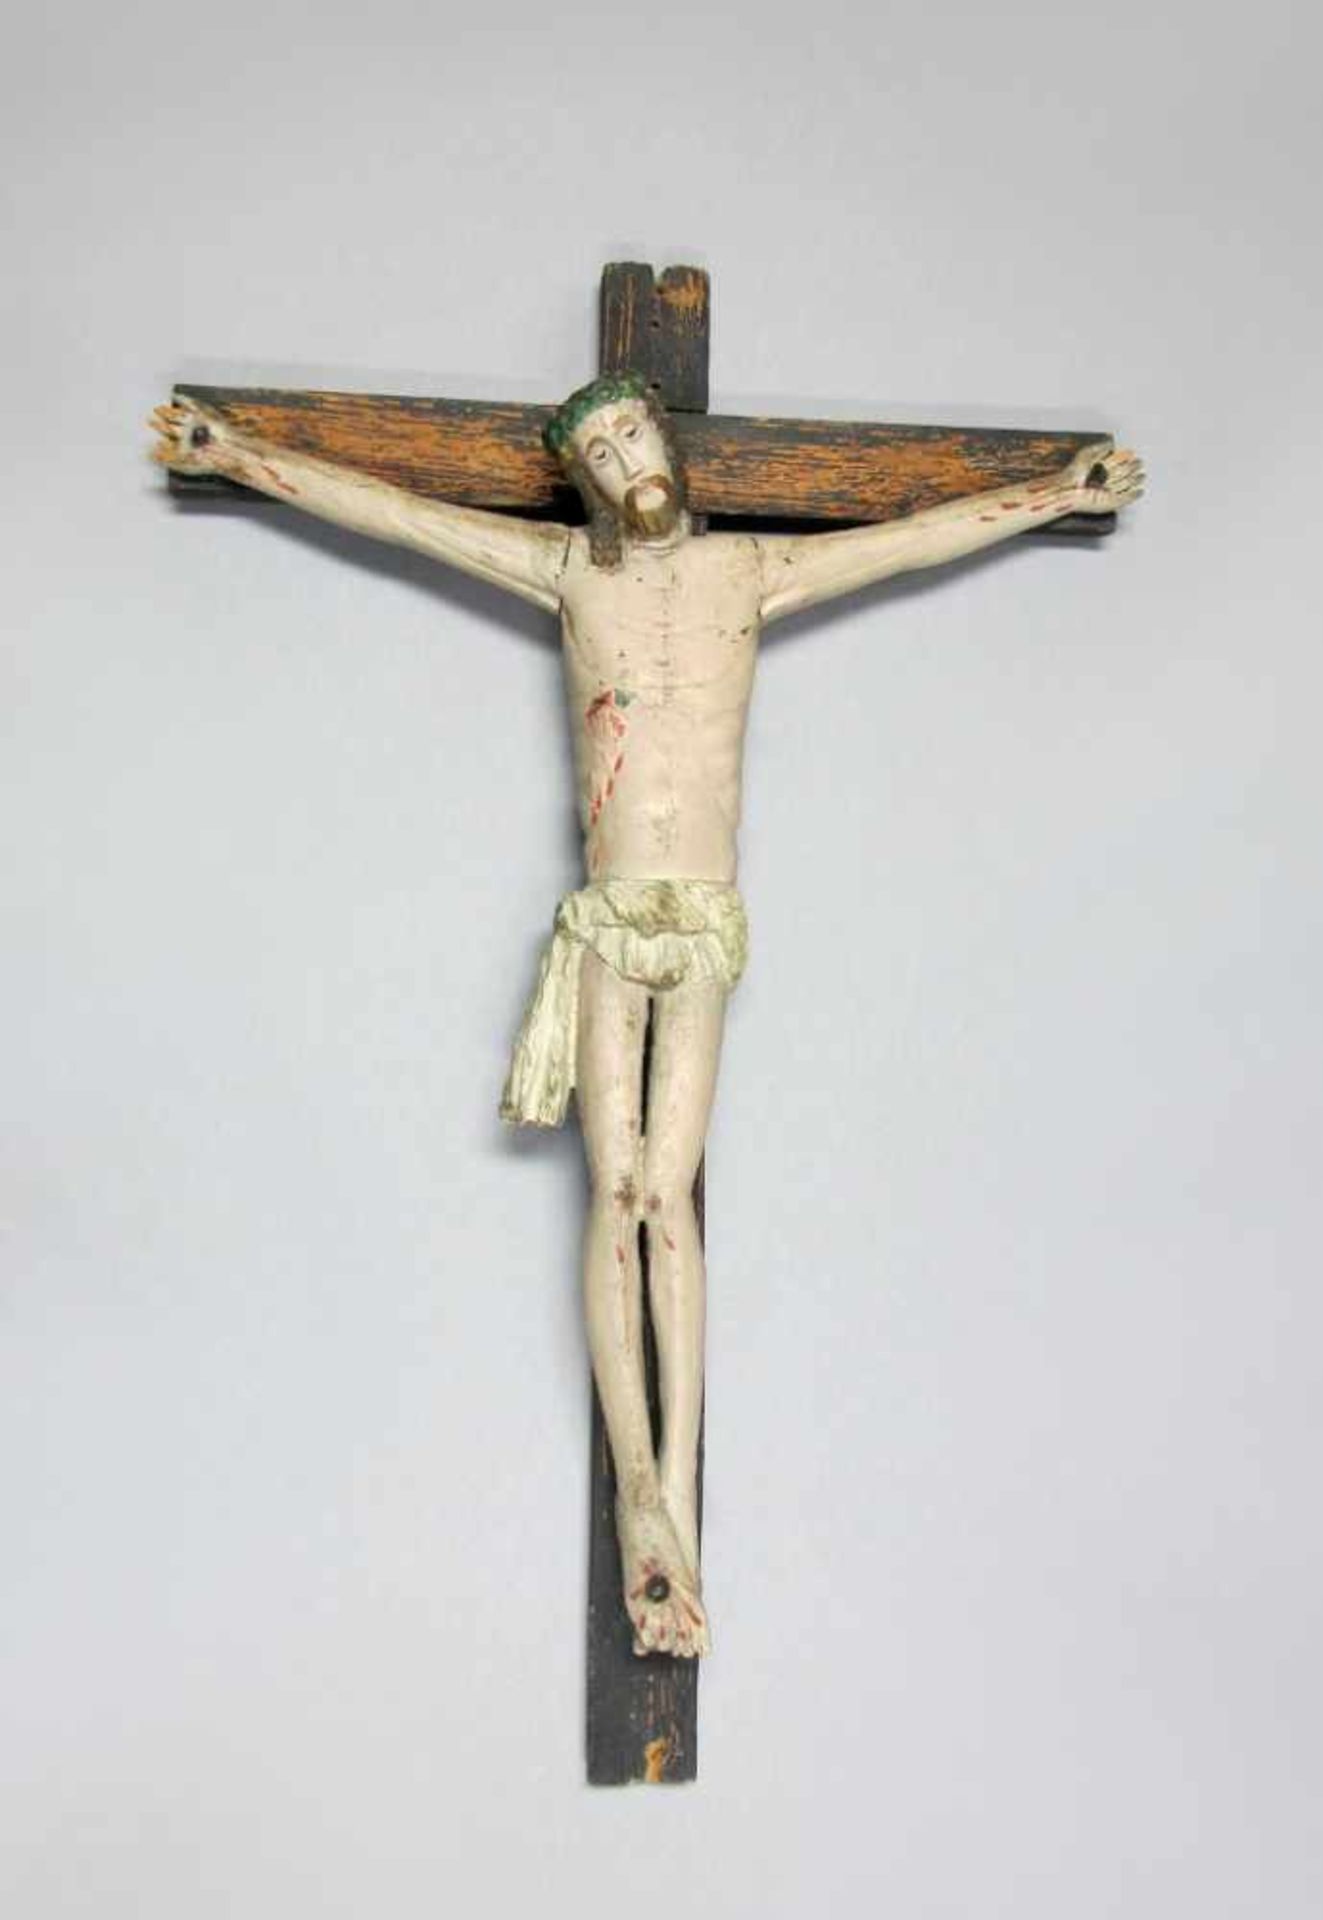 Kruzifix. Dreinageltypus. Holz gefasst. Alpenländisch/Osteuropa, 19. Jh. Korpus Höhe 80 cm